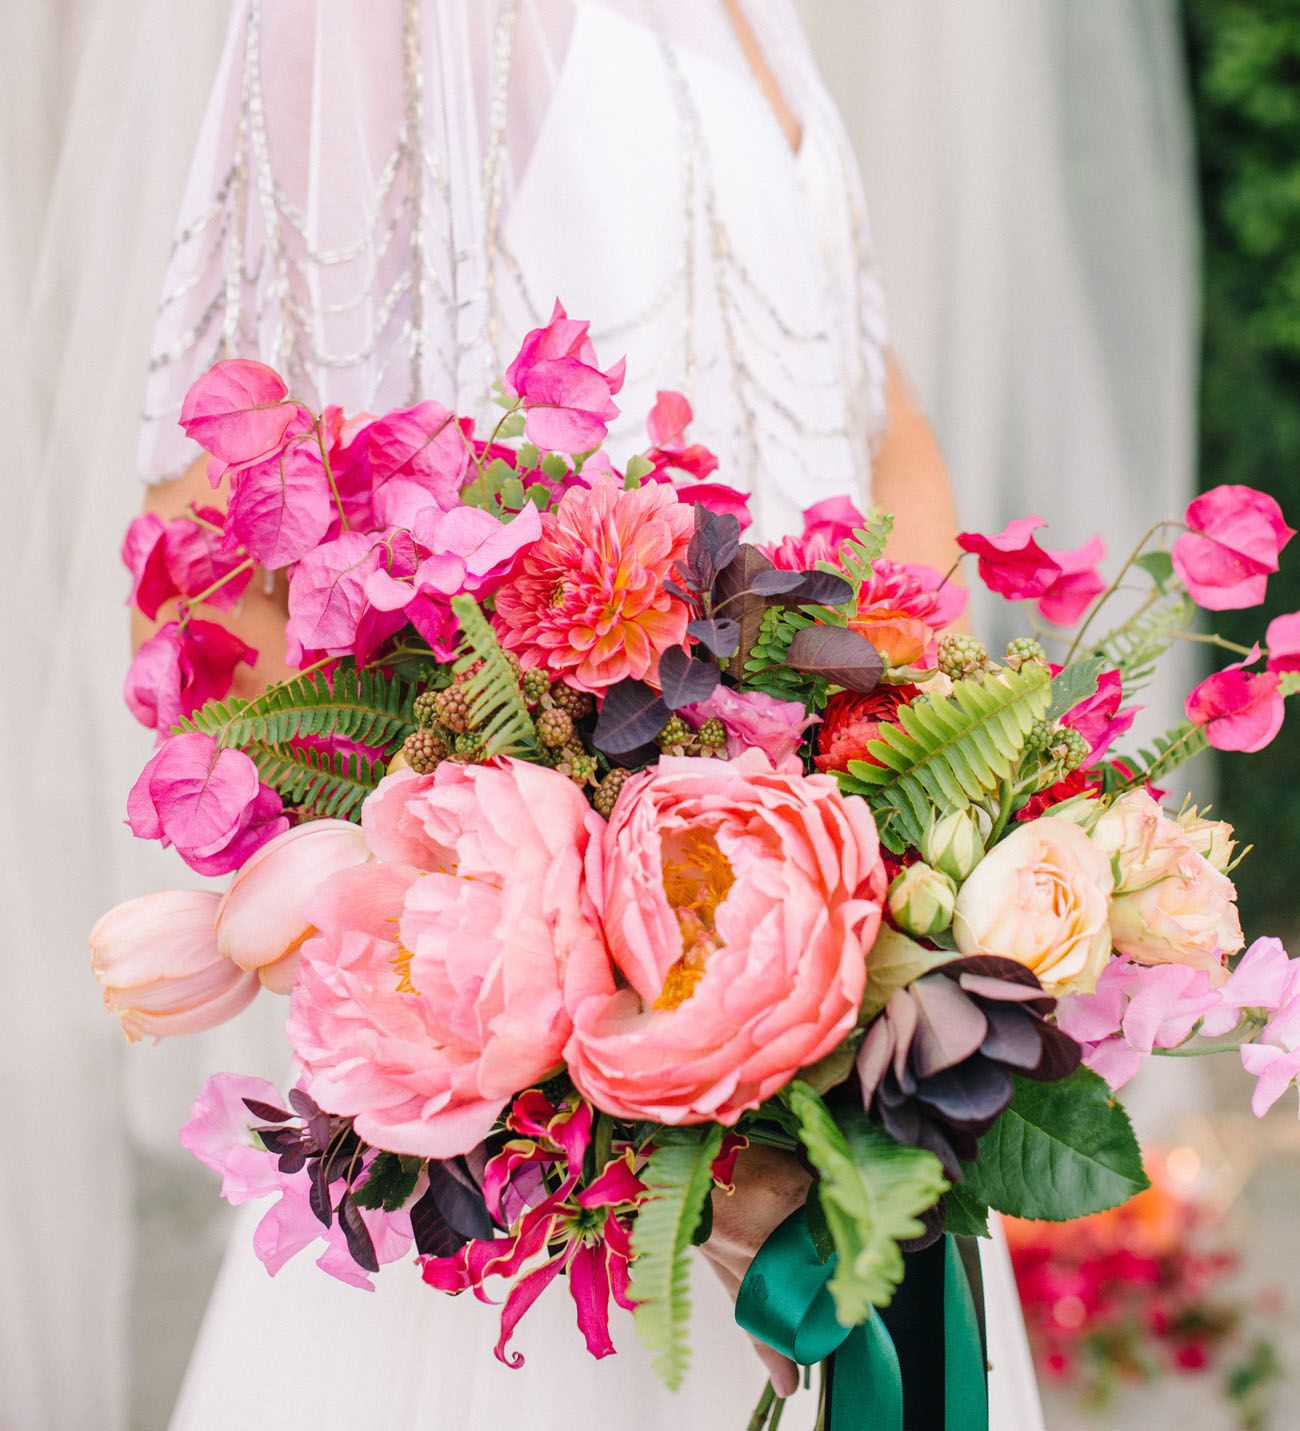 Prettiest Seasonal Spring Wedding Flowers & Bouquet Ideas